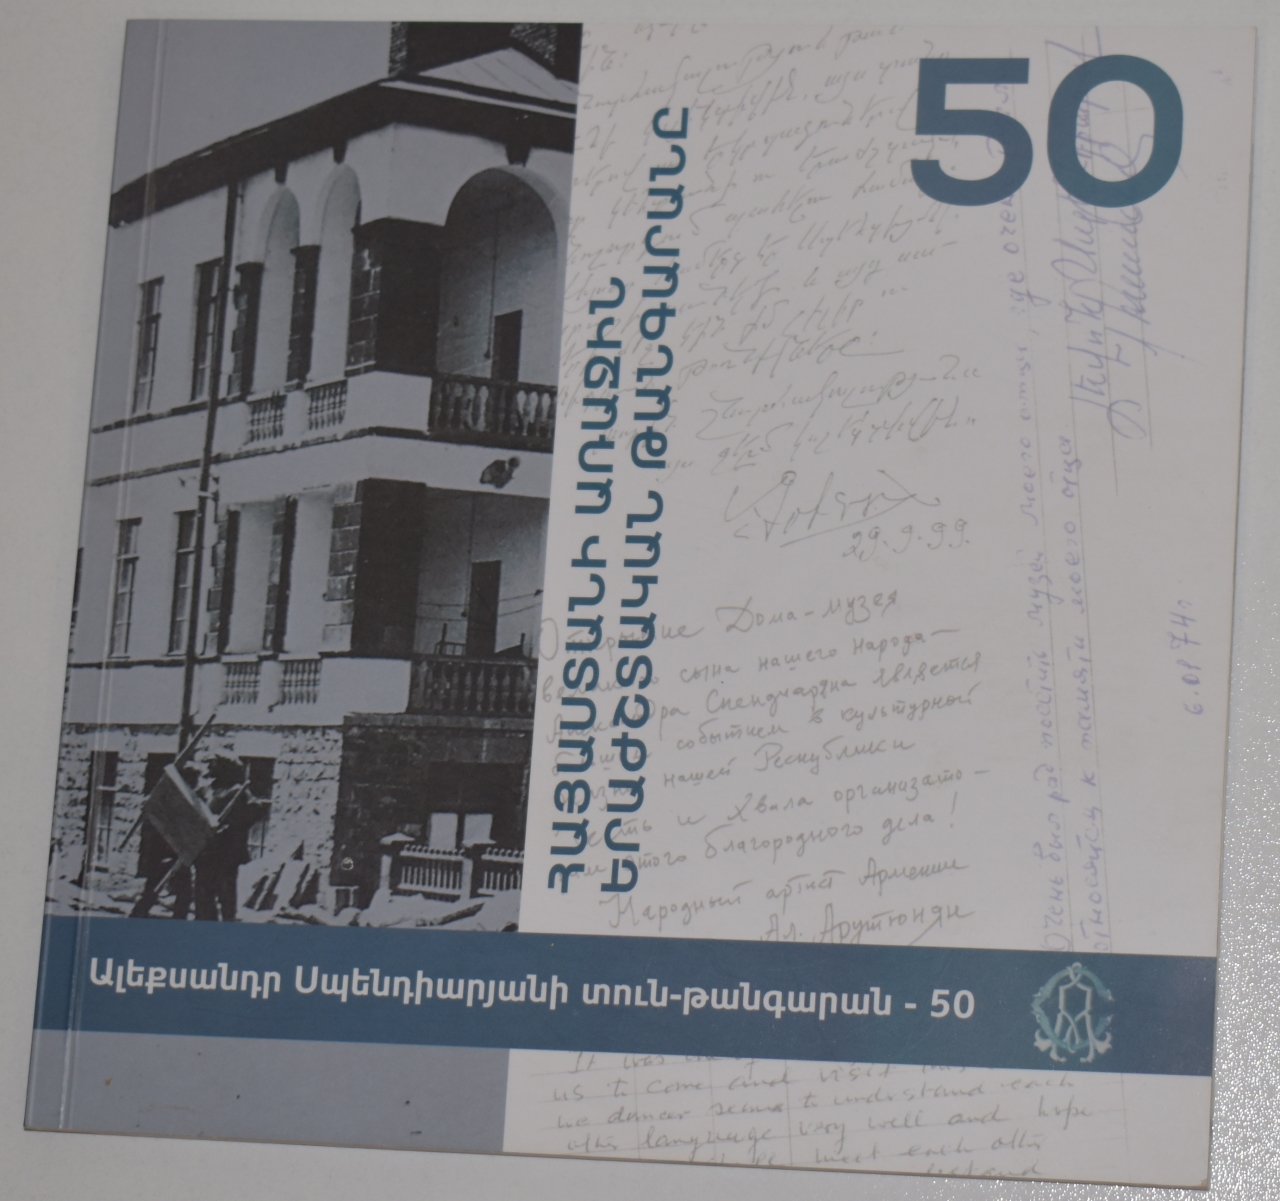 «Հայաստանի առաջին երաժշտական թանգարանը- Ալեքսանդր Սպենդիարյան տուն-թանգարան 50»: